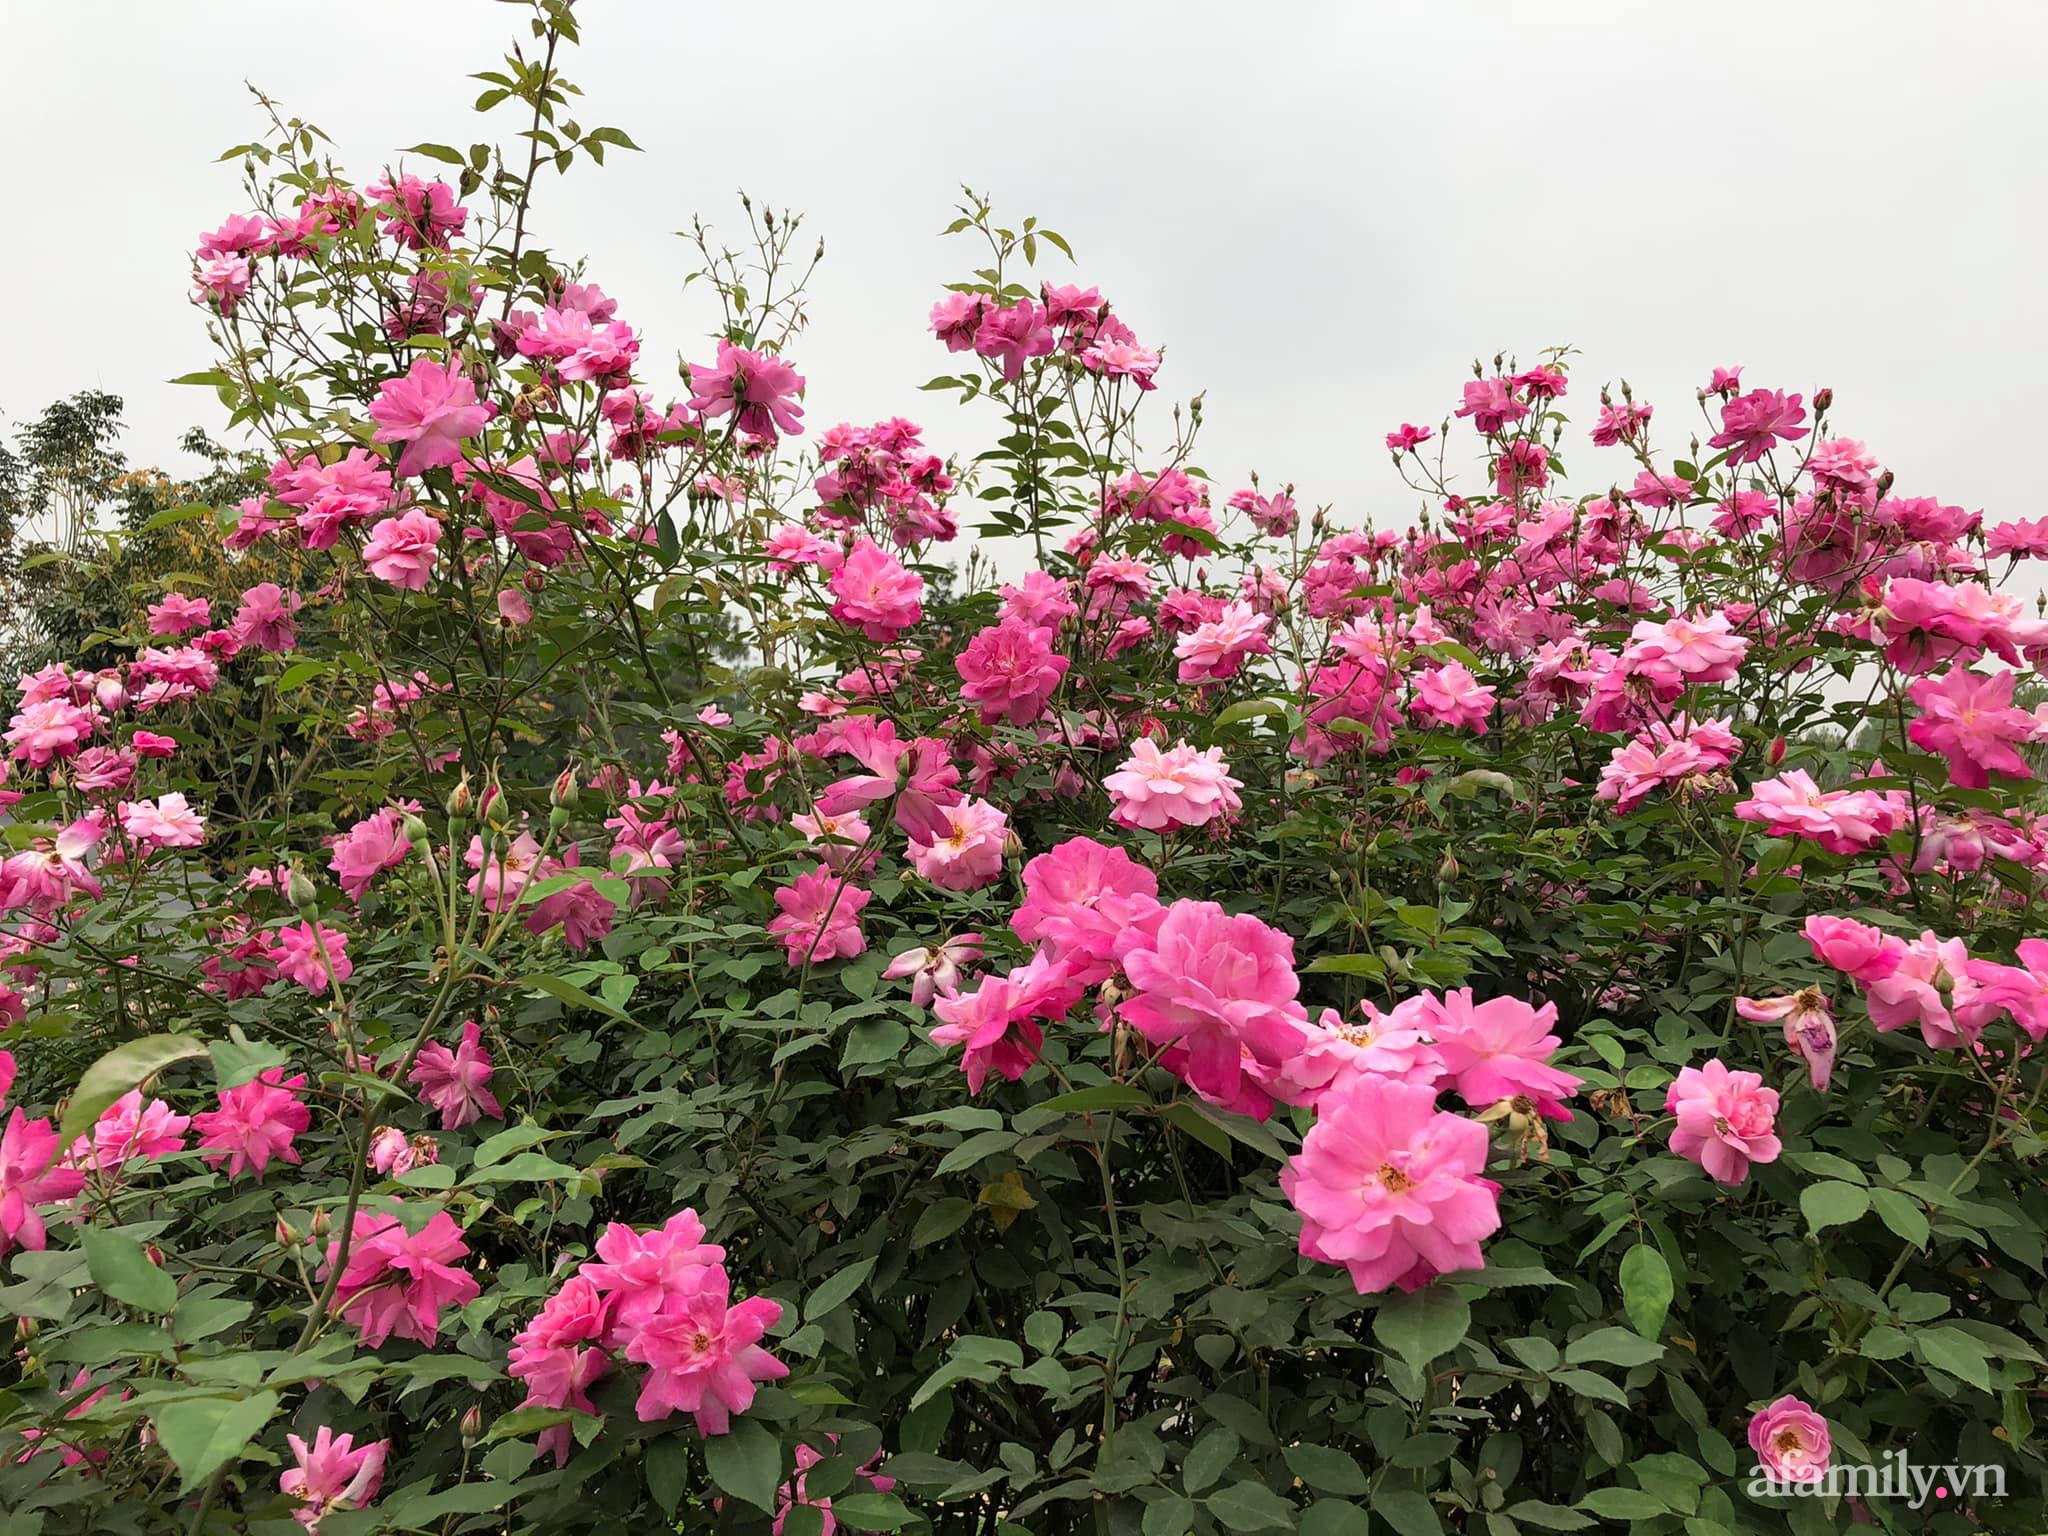 Cuộc sống an yên giữa đồi núi trong ngôi nhà hoa hồng quanh năm tỏa hương sắc của gia đình ở Ba Vì - Ảnh 13.